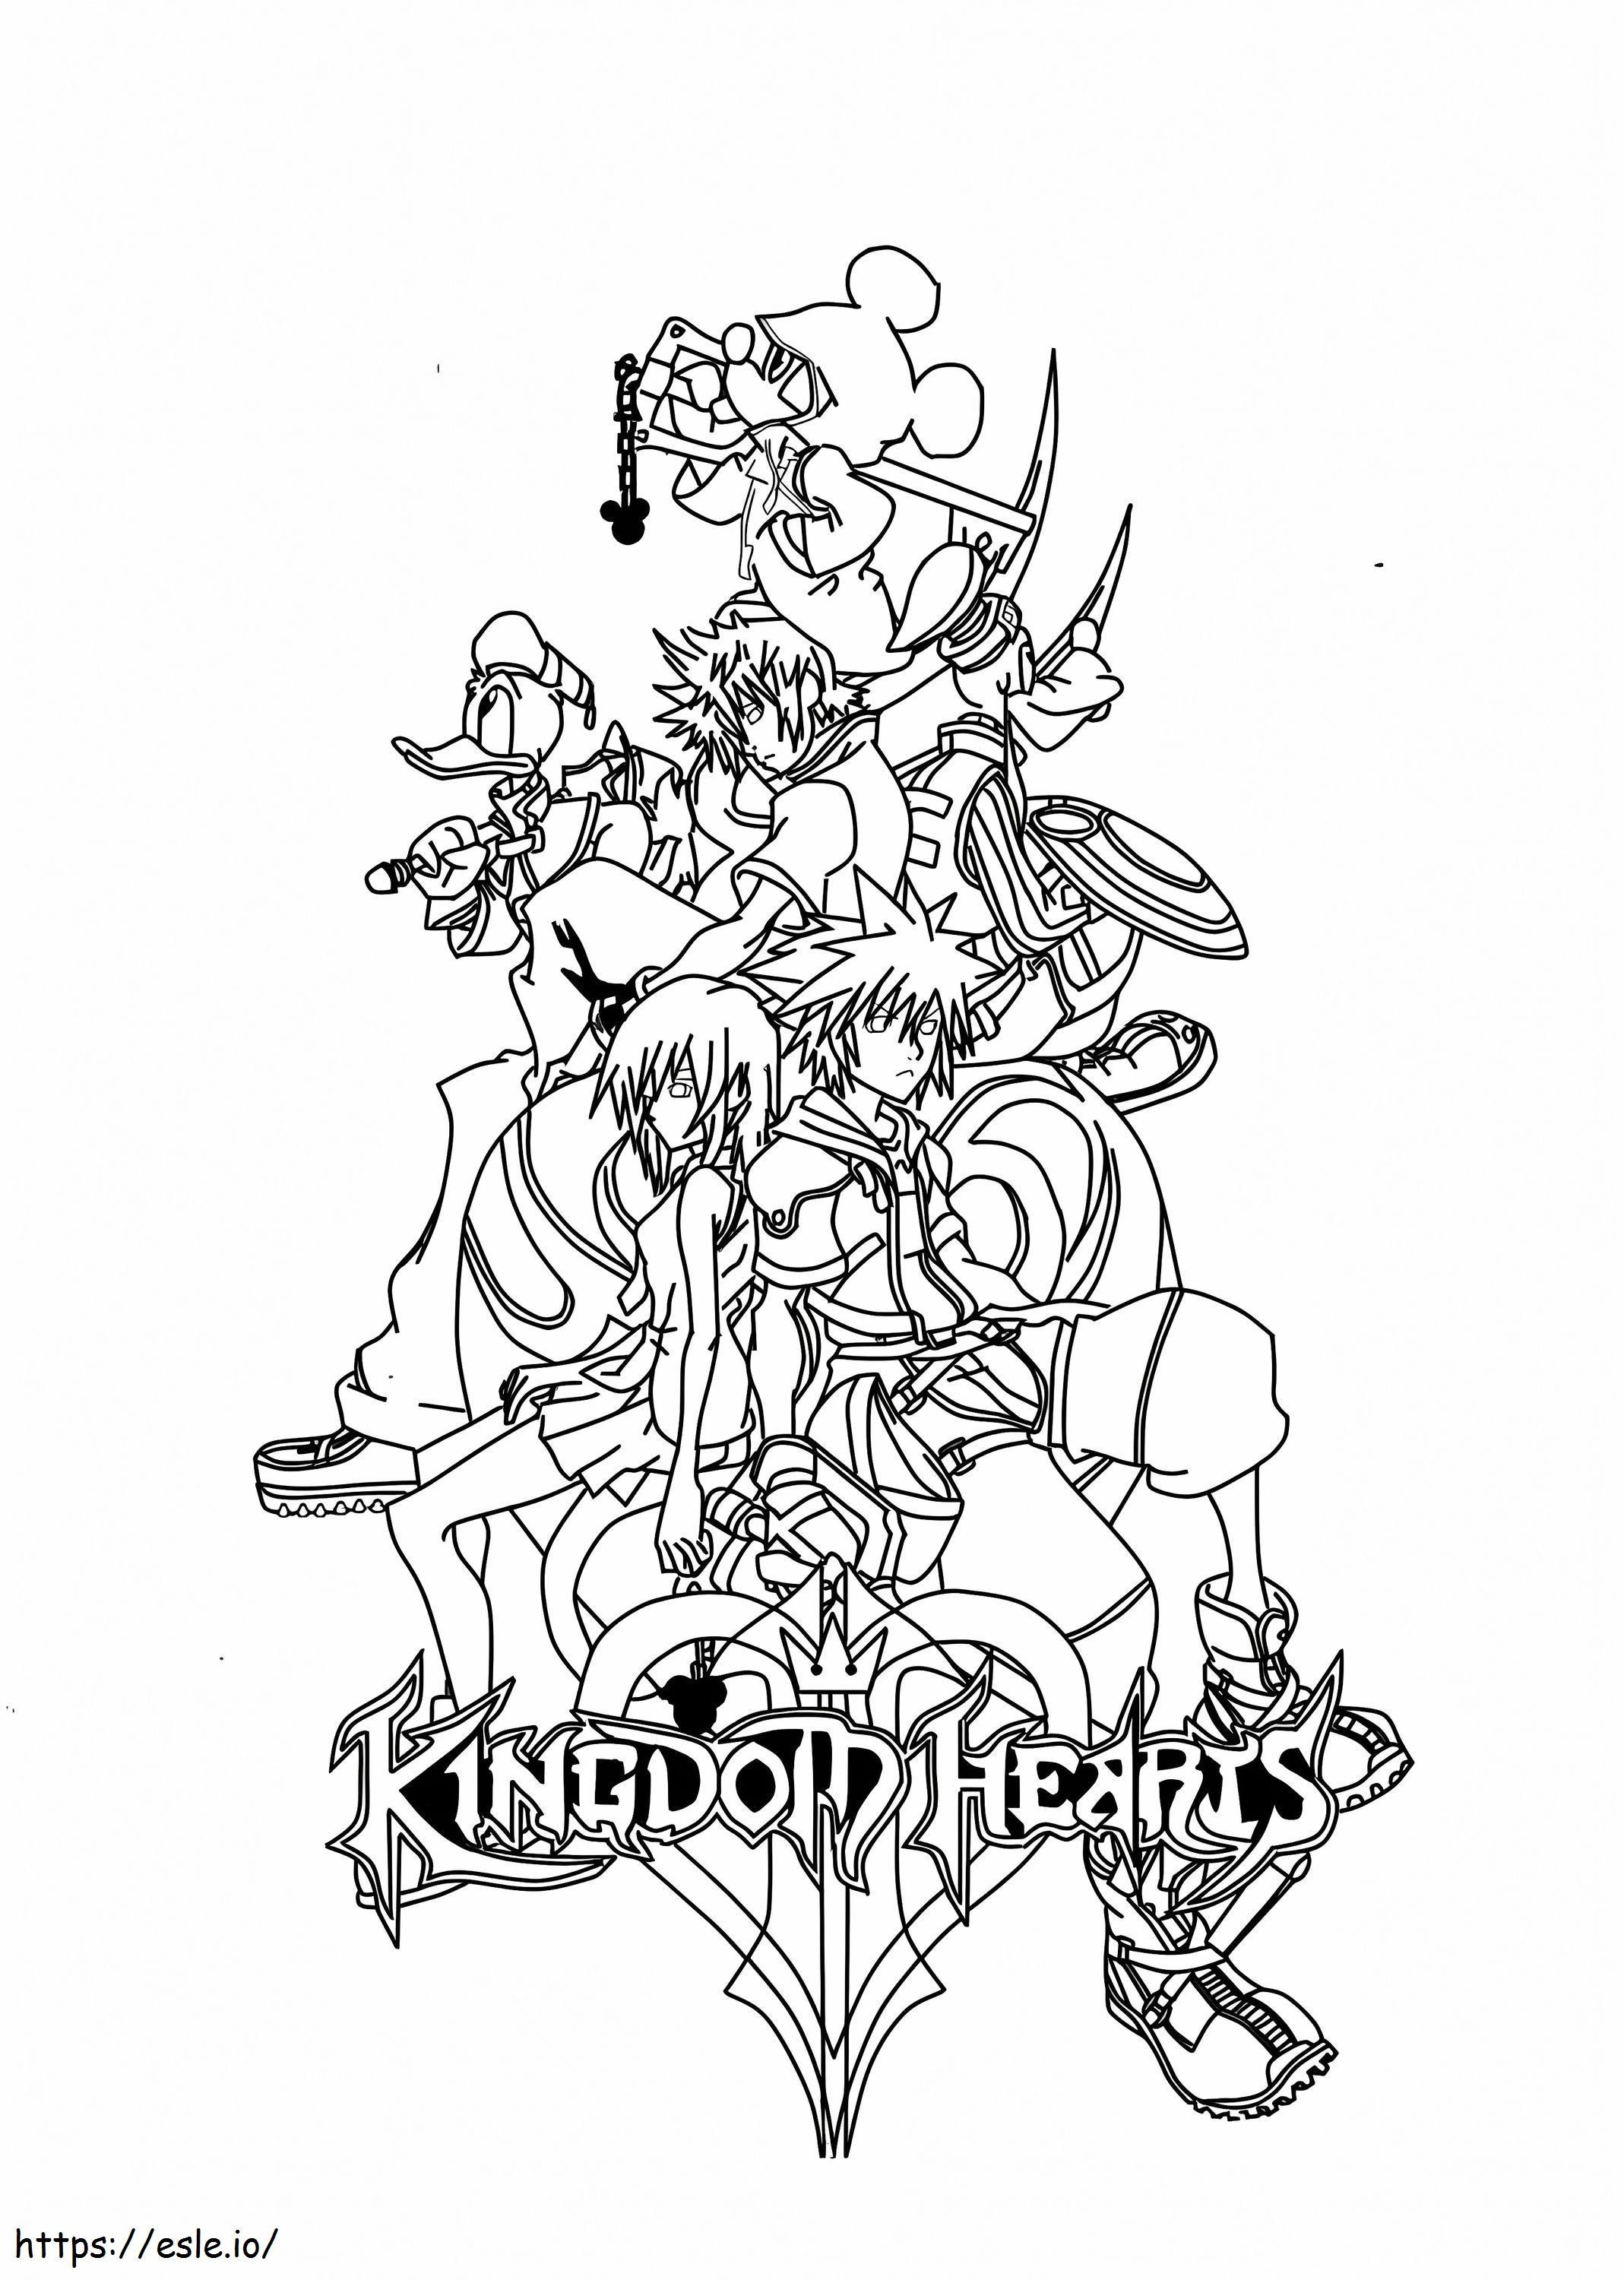 Personagens de Kingdom Hearts para colorir